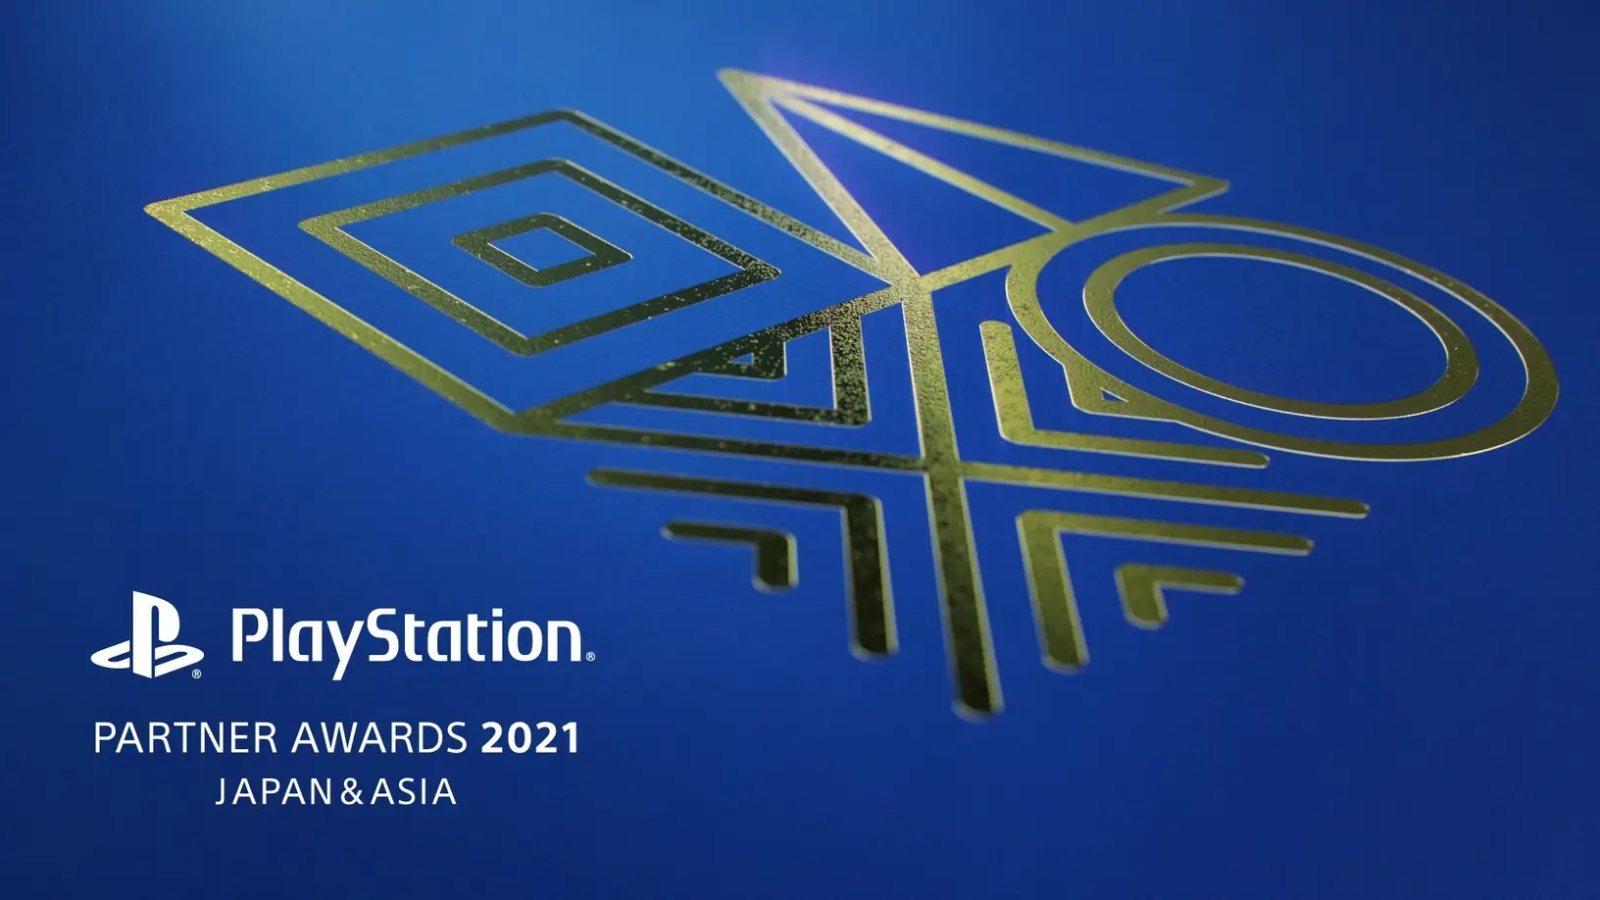 PlayStation Partner Awards 2021日本及亚洲地区获奖名单公布